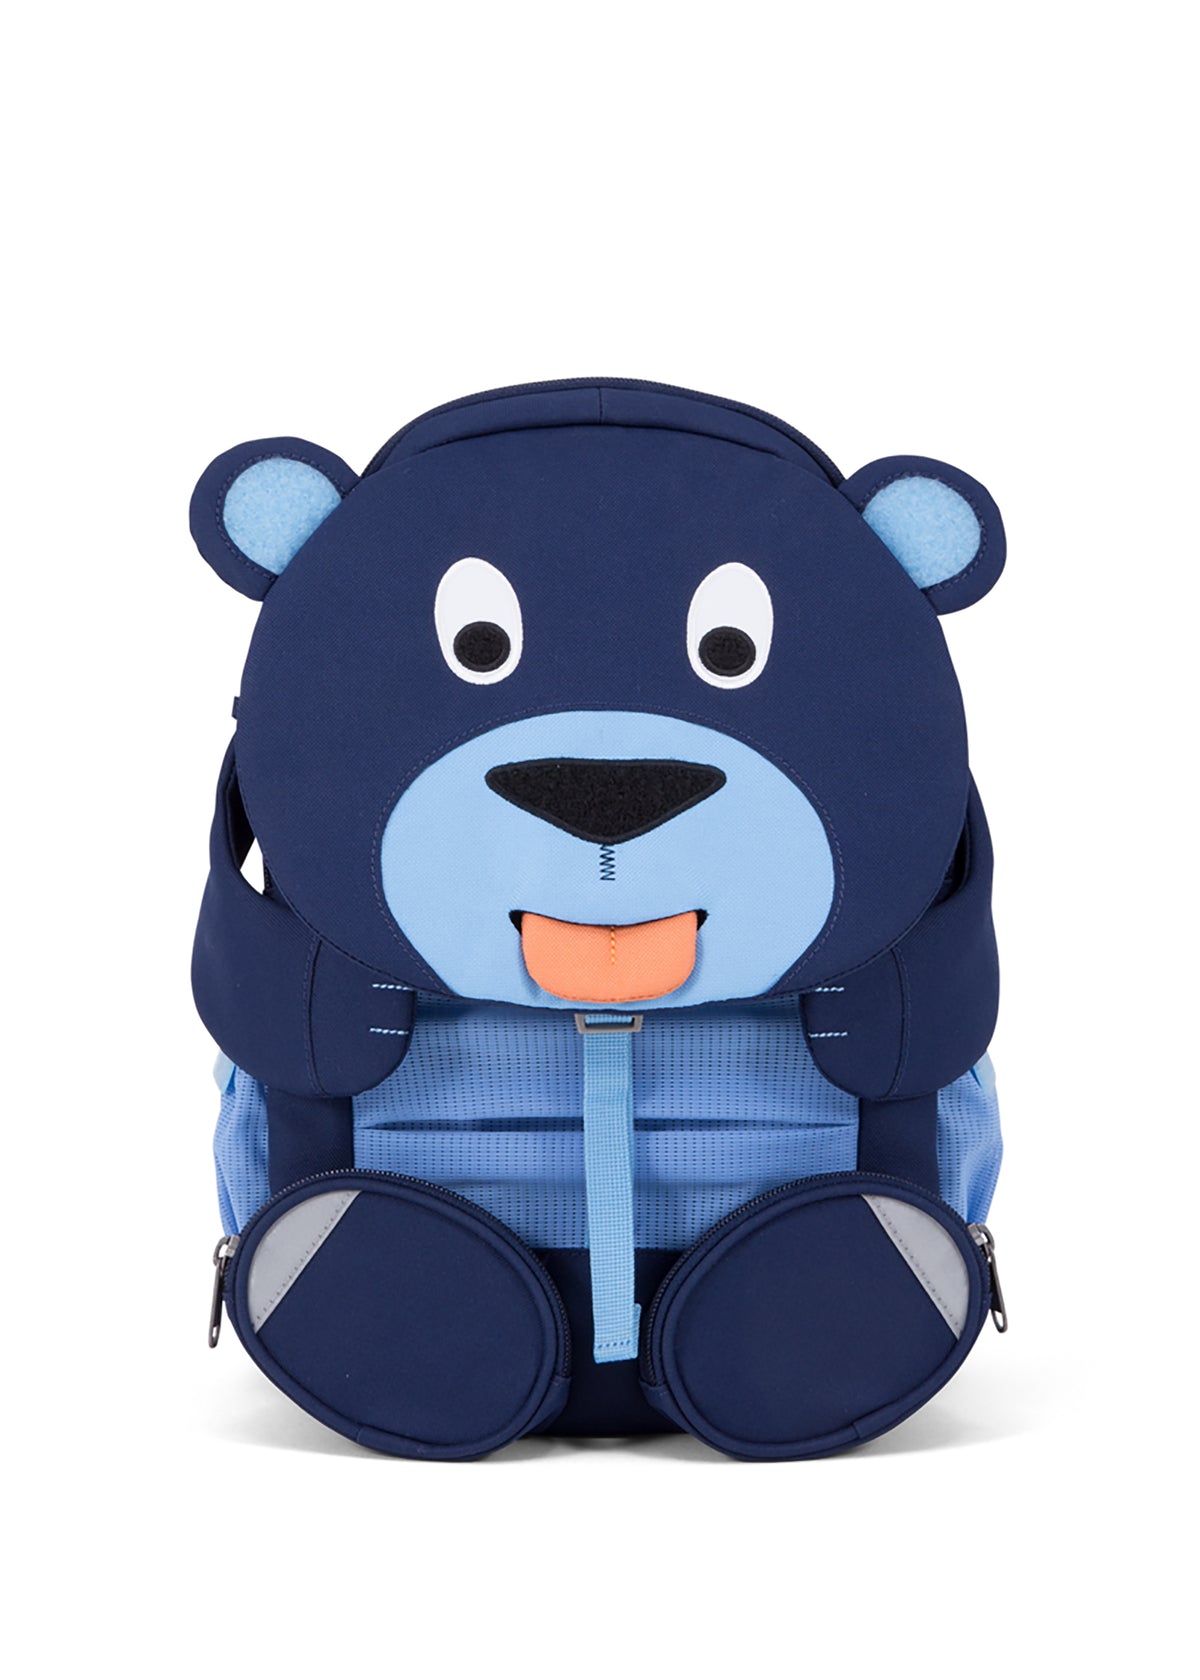 Children's backpack, large - Bear